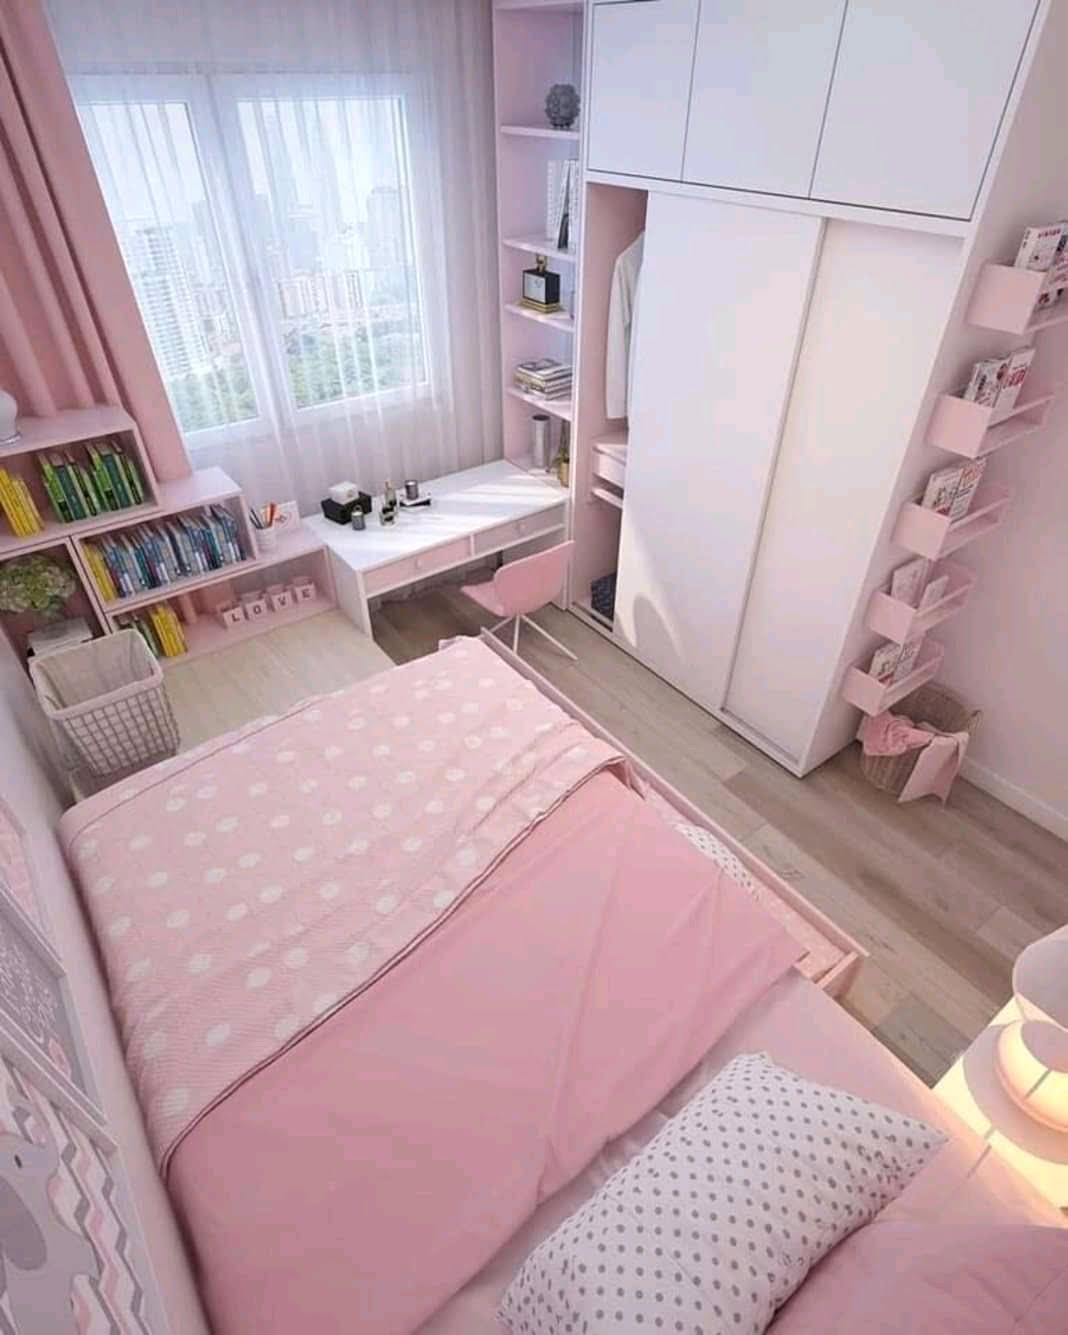 63 Populer Desain Interior Kamar Tidur Warna Pink Terlengkap